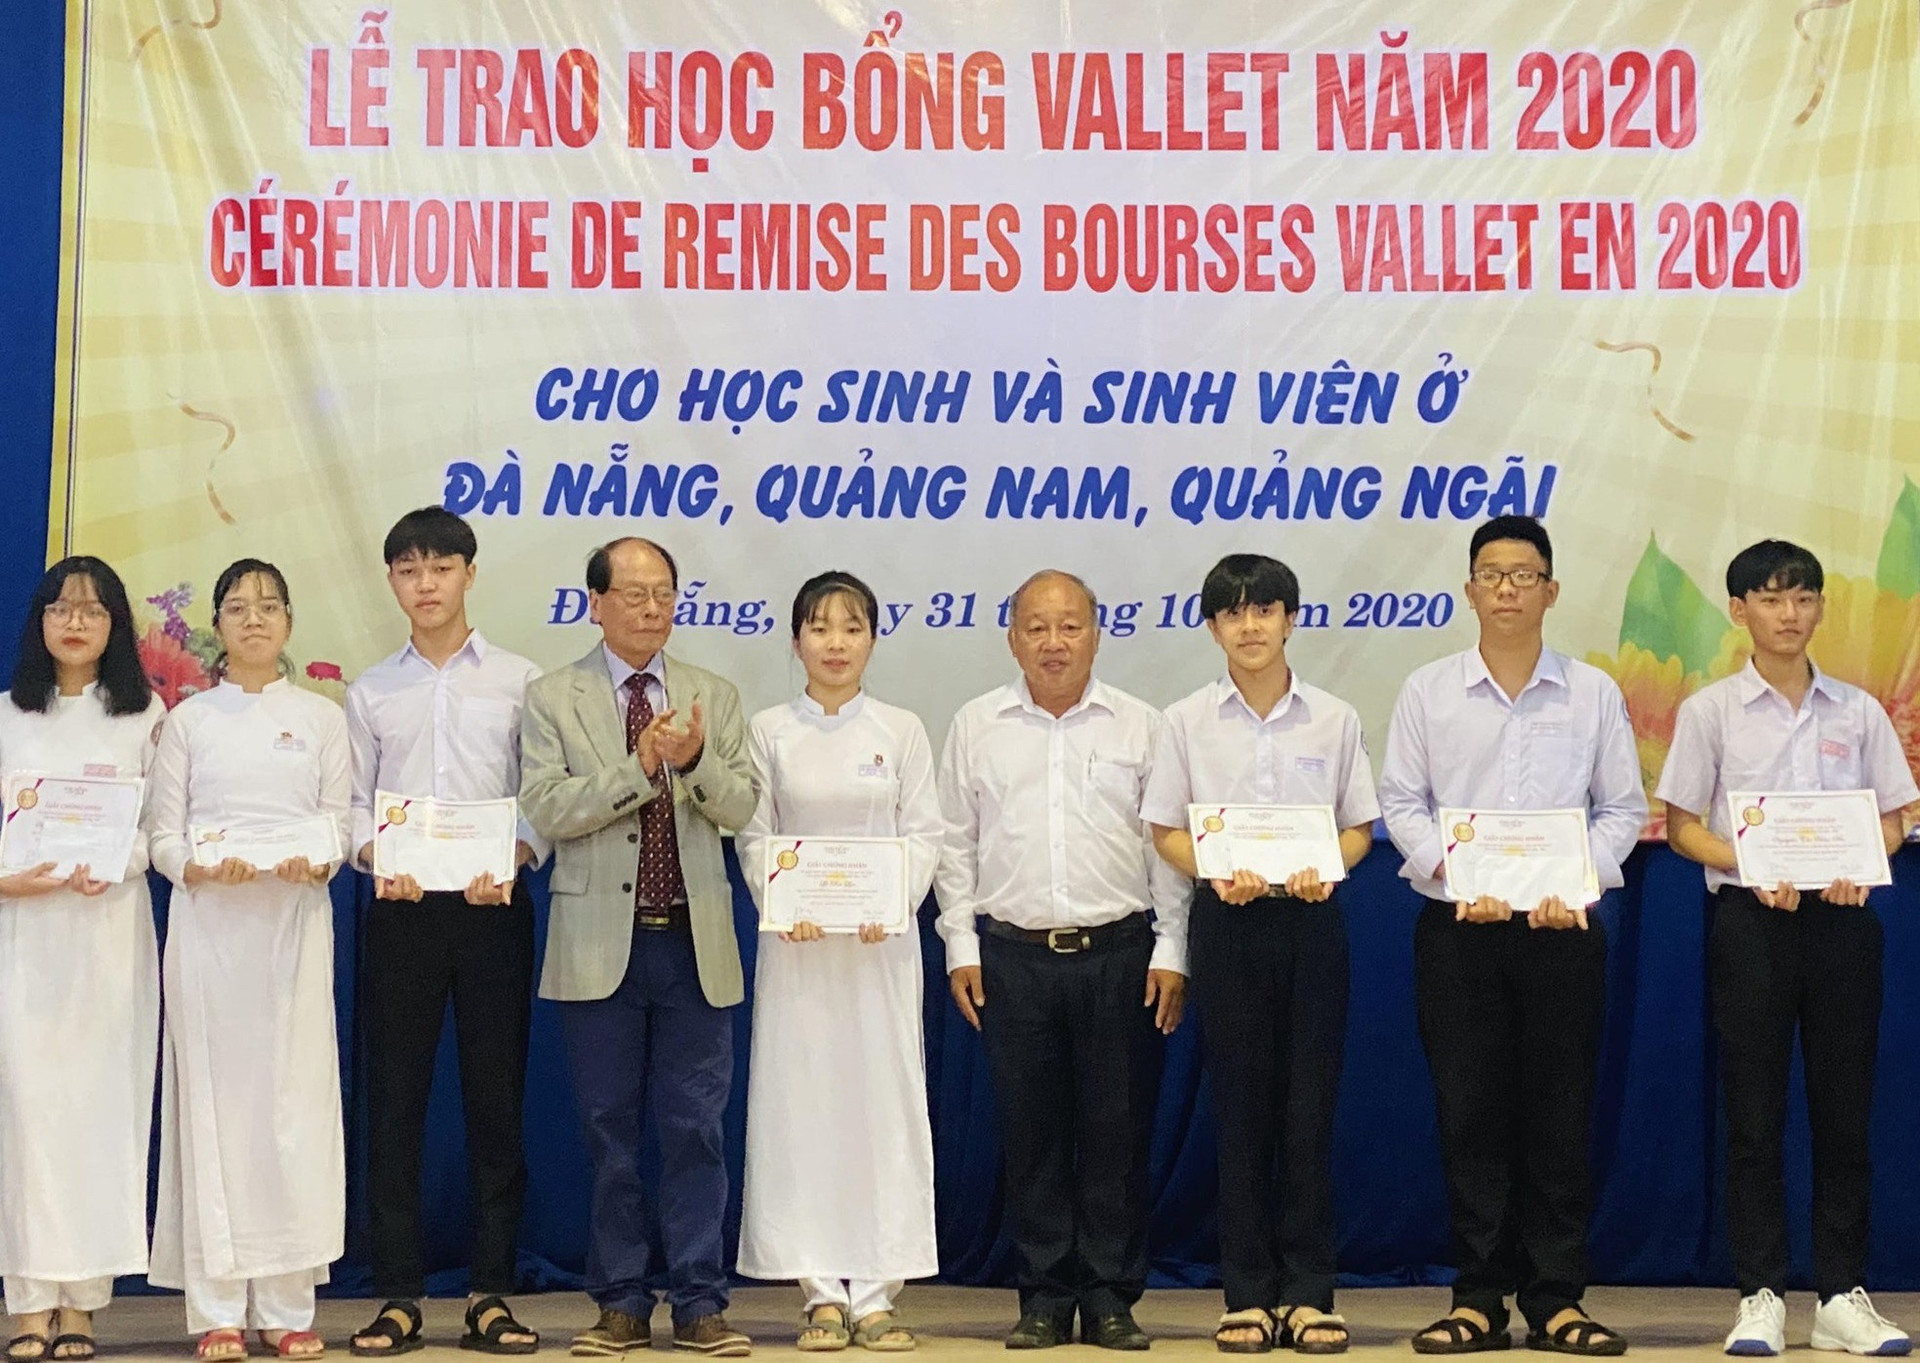 Học sinh THPT Quảng Nam nhận học bổng Vallet năm 2020. Ảnh:V.P.TRANG